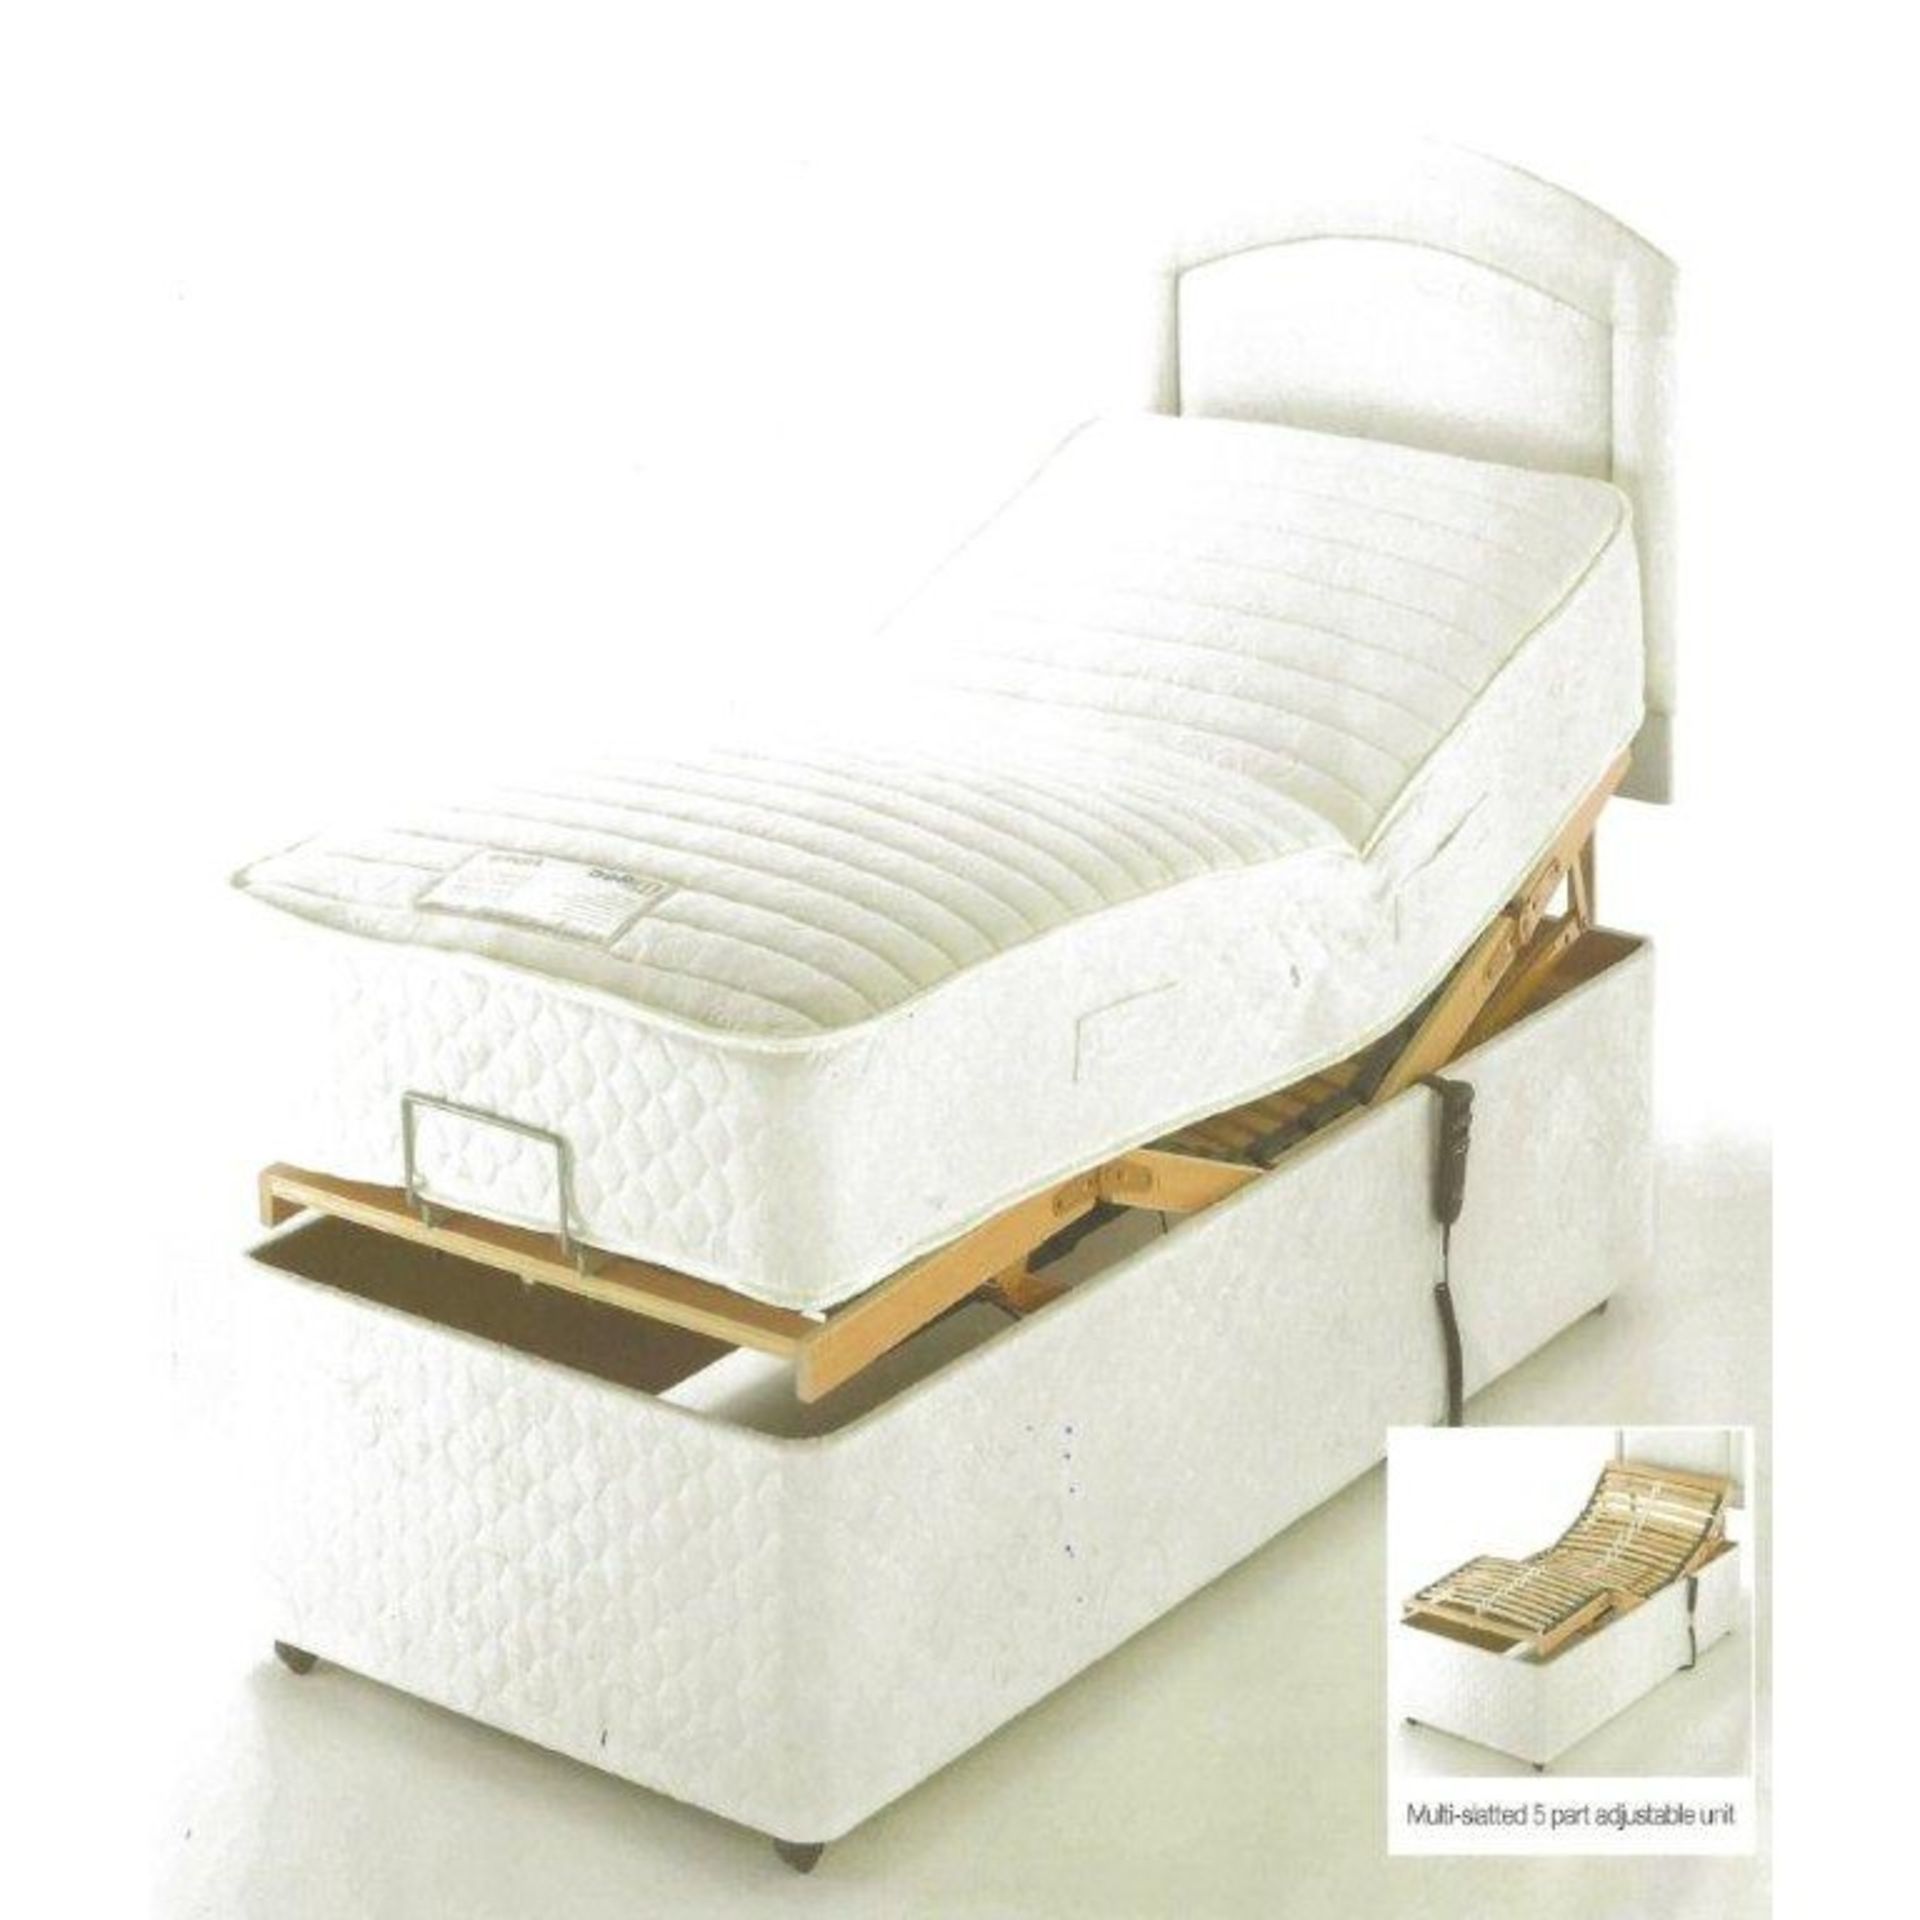 Brand New 30 Single Alpina Adjustable Electric Bed With Pocket Sprung Mattress - Bild 2 aus 2